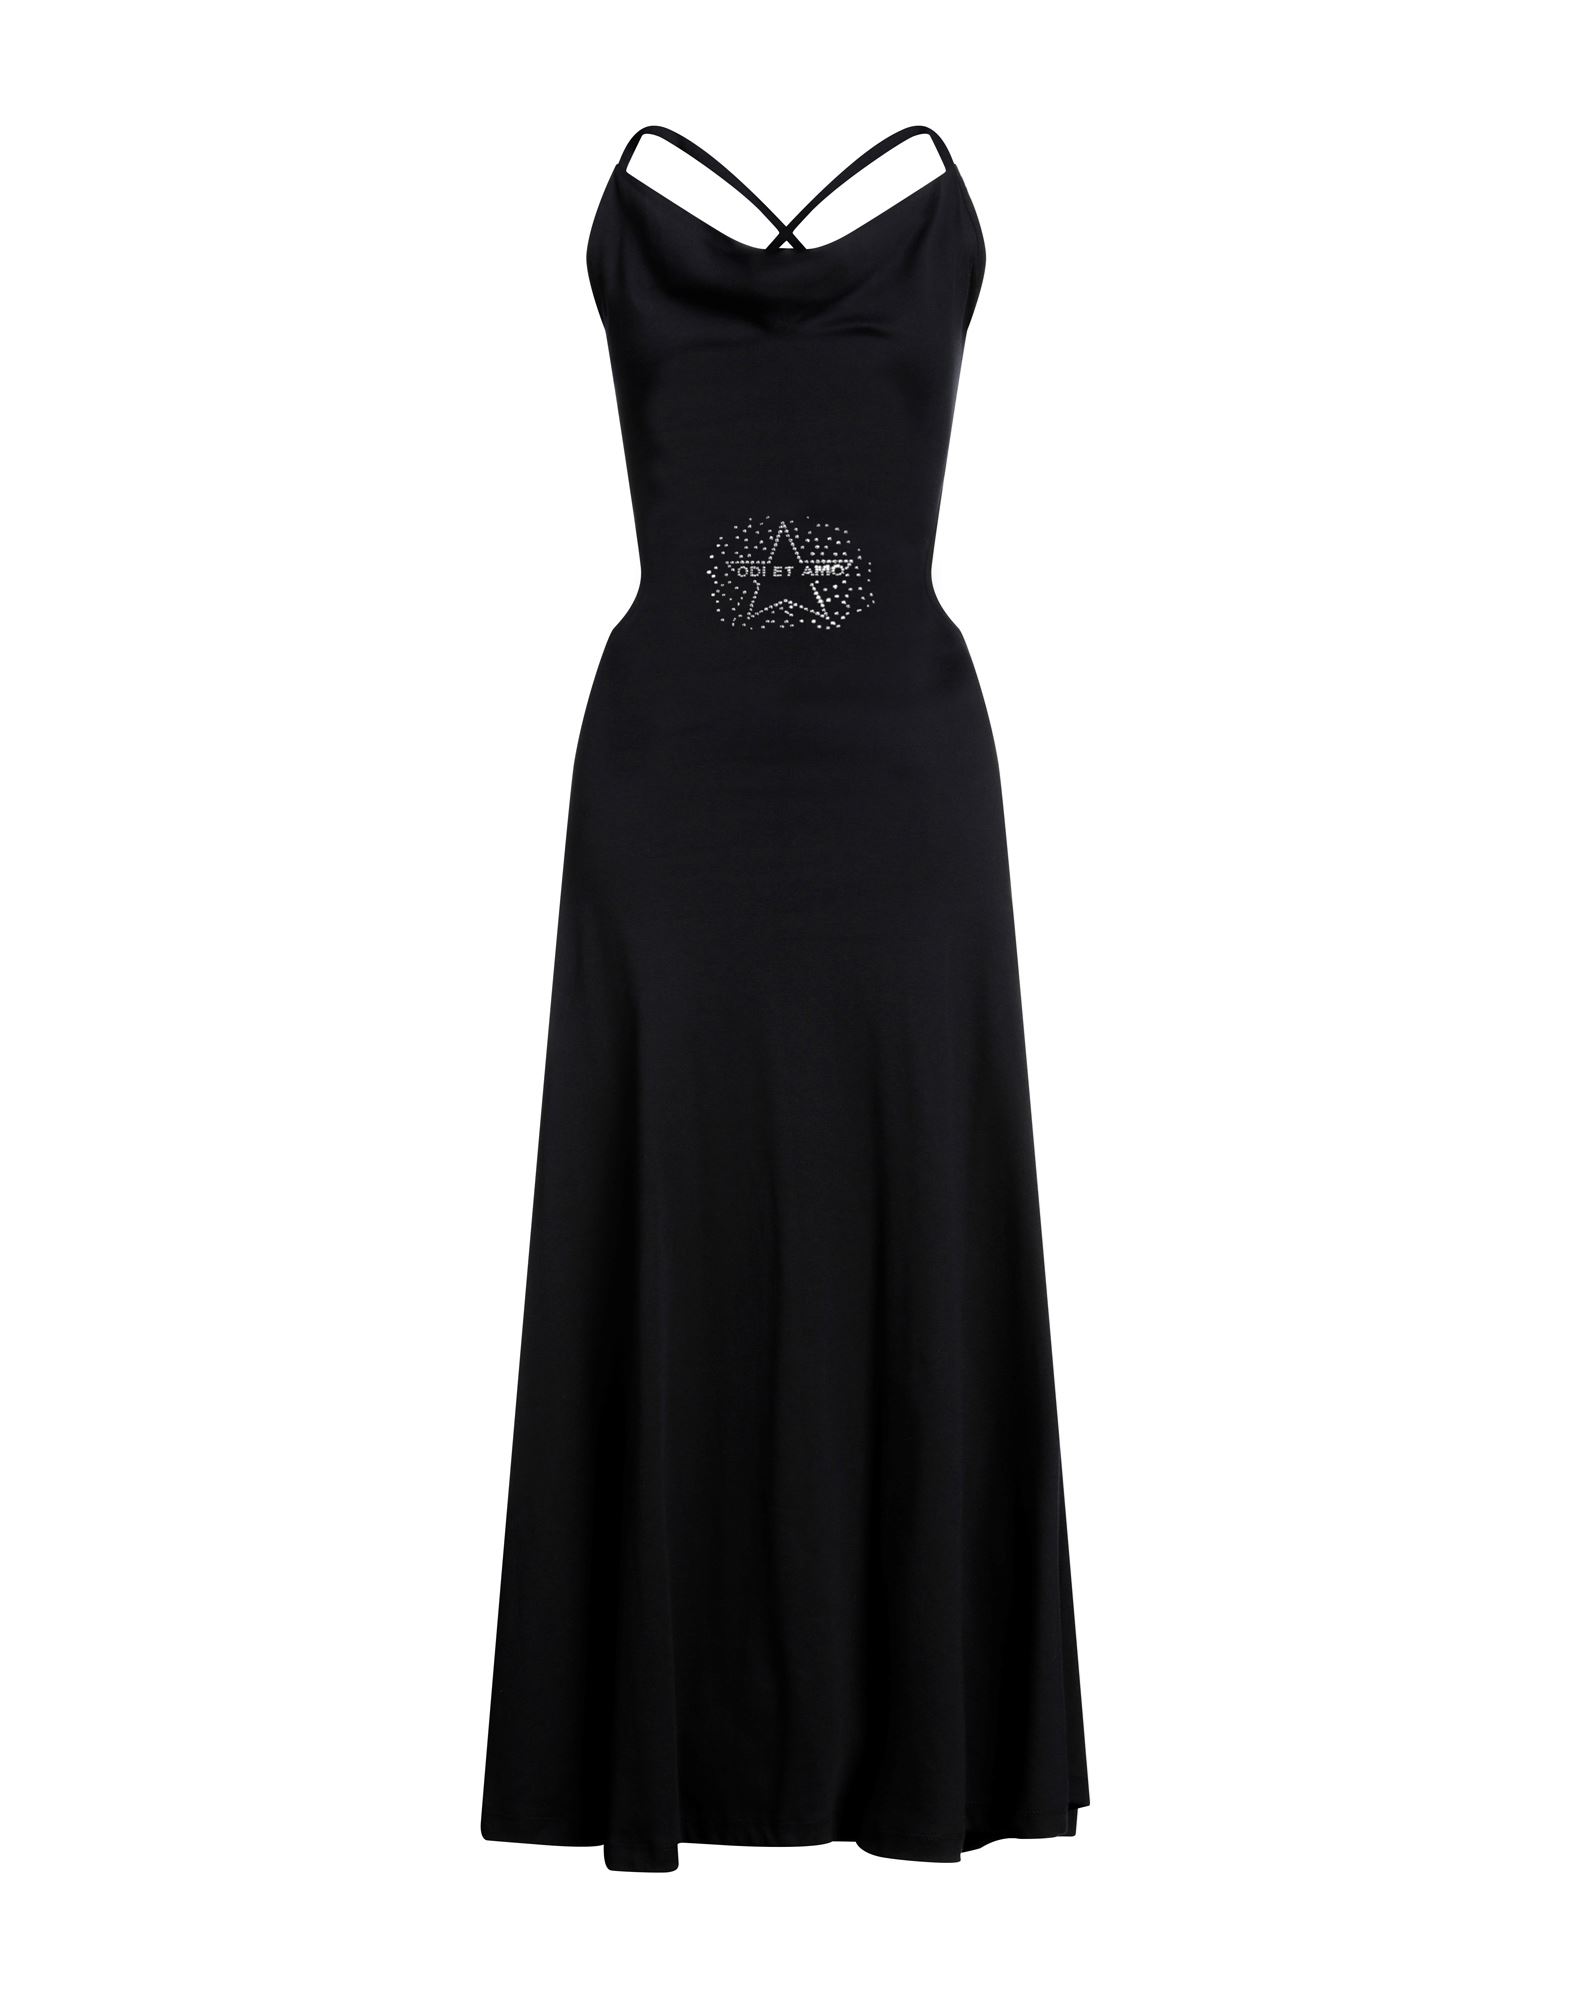 Odi Et Amo Woman Long Dress Black Size 6 Cotton